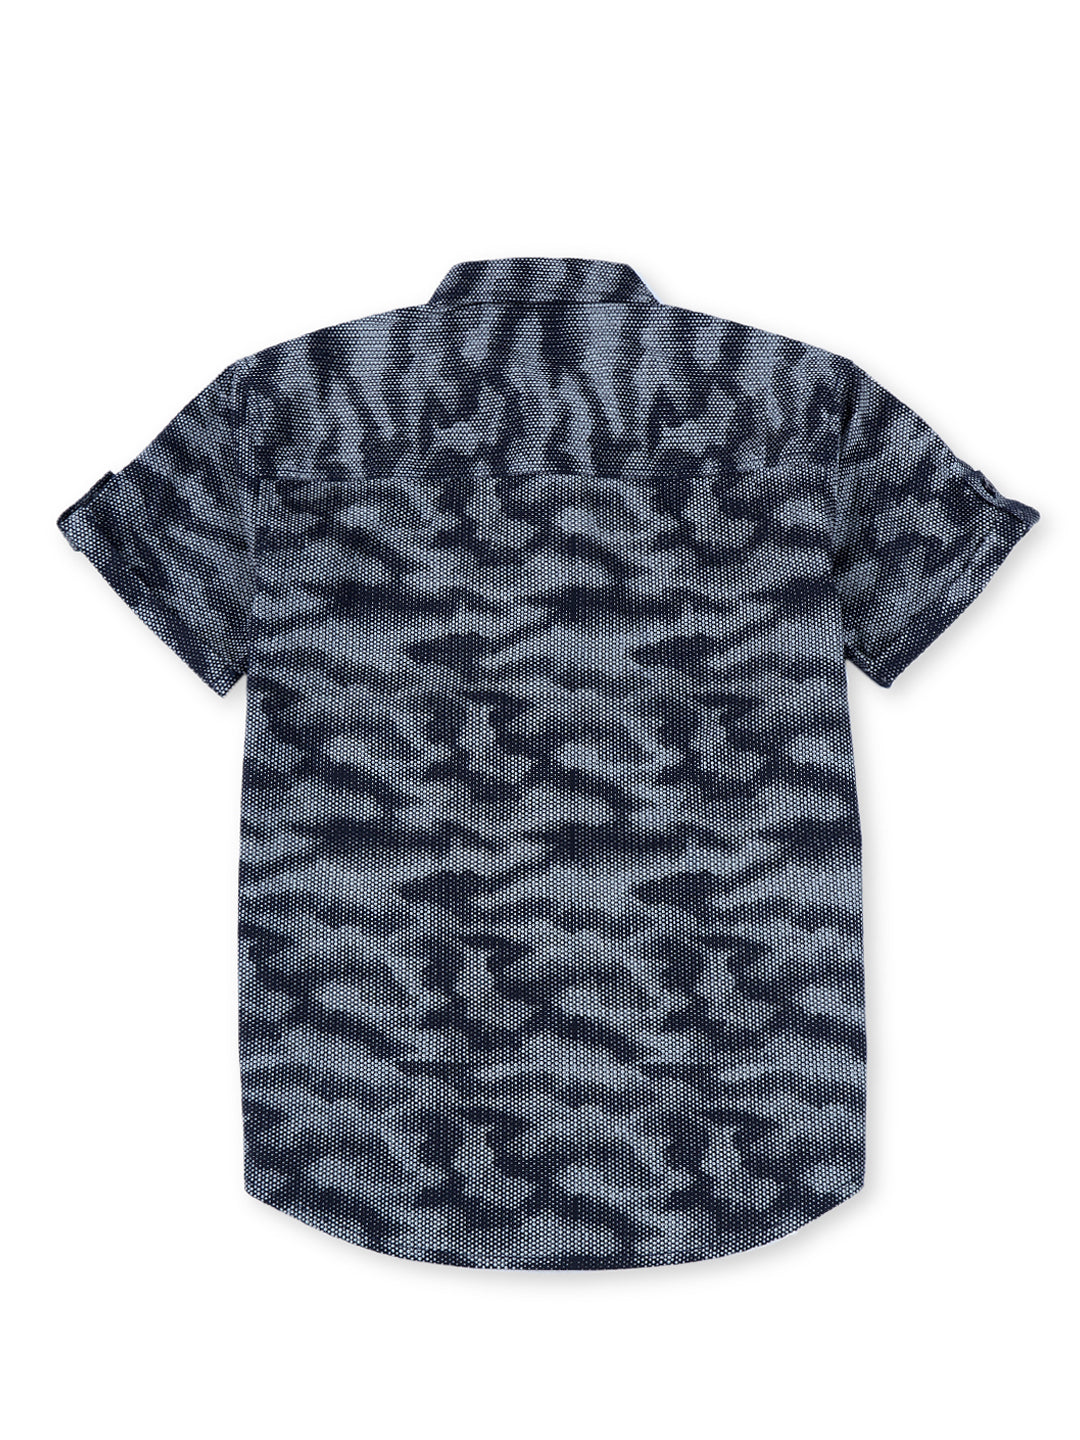 Boys Navy Blue Cotton Printed Shirt